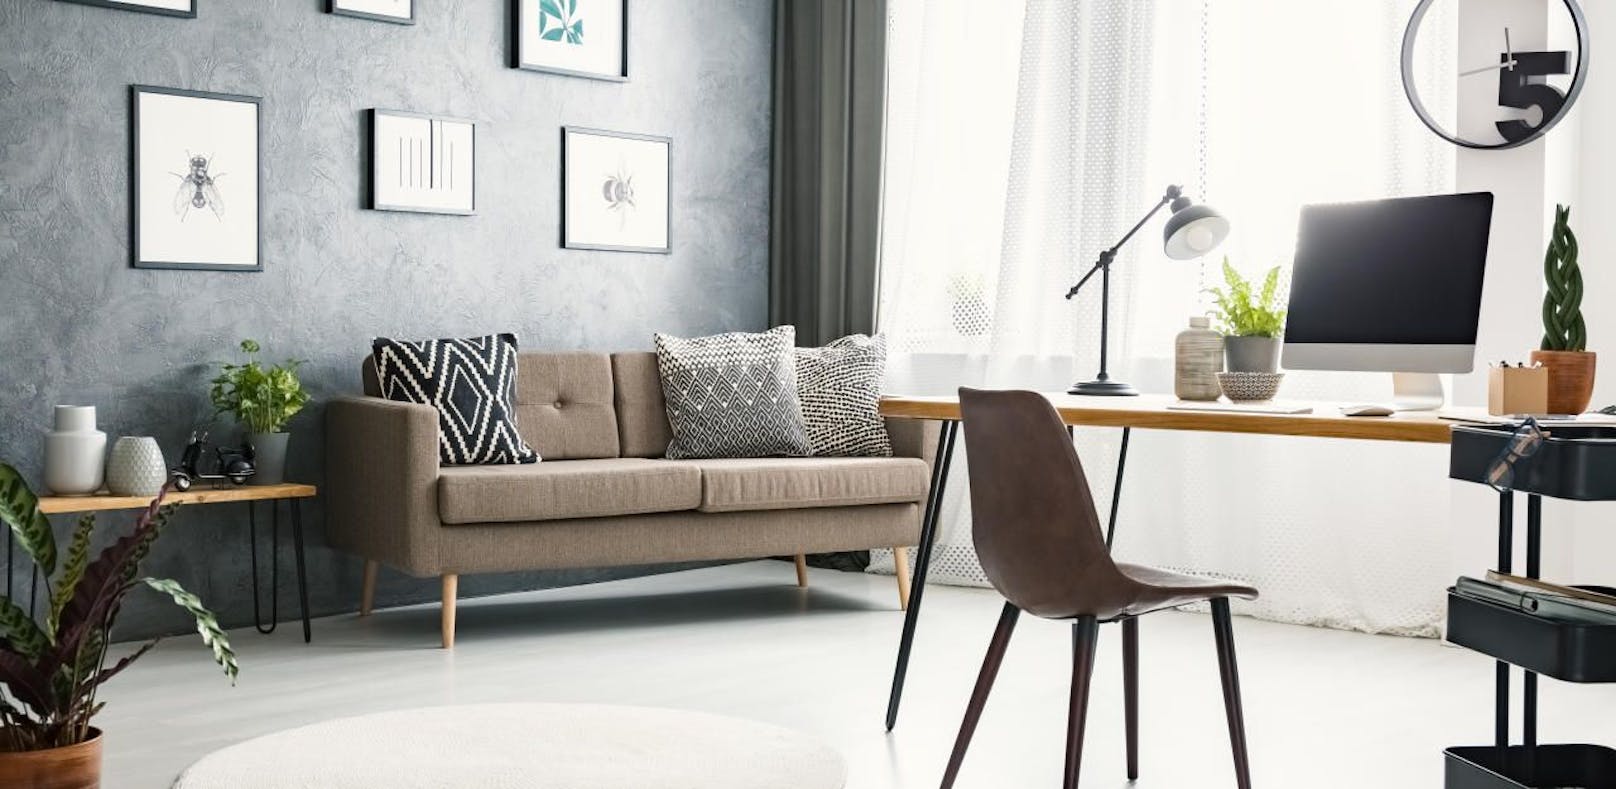 Neuer Wohntrend: Möbel mieten statt kaufen